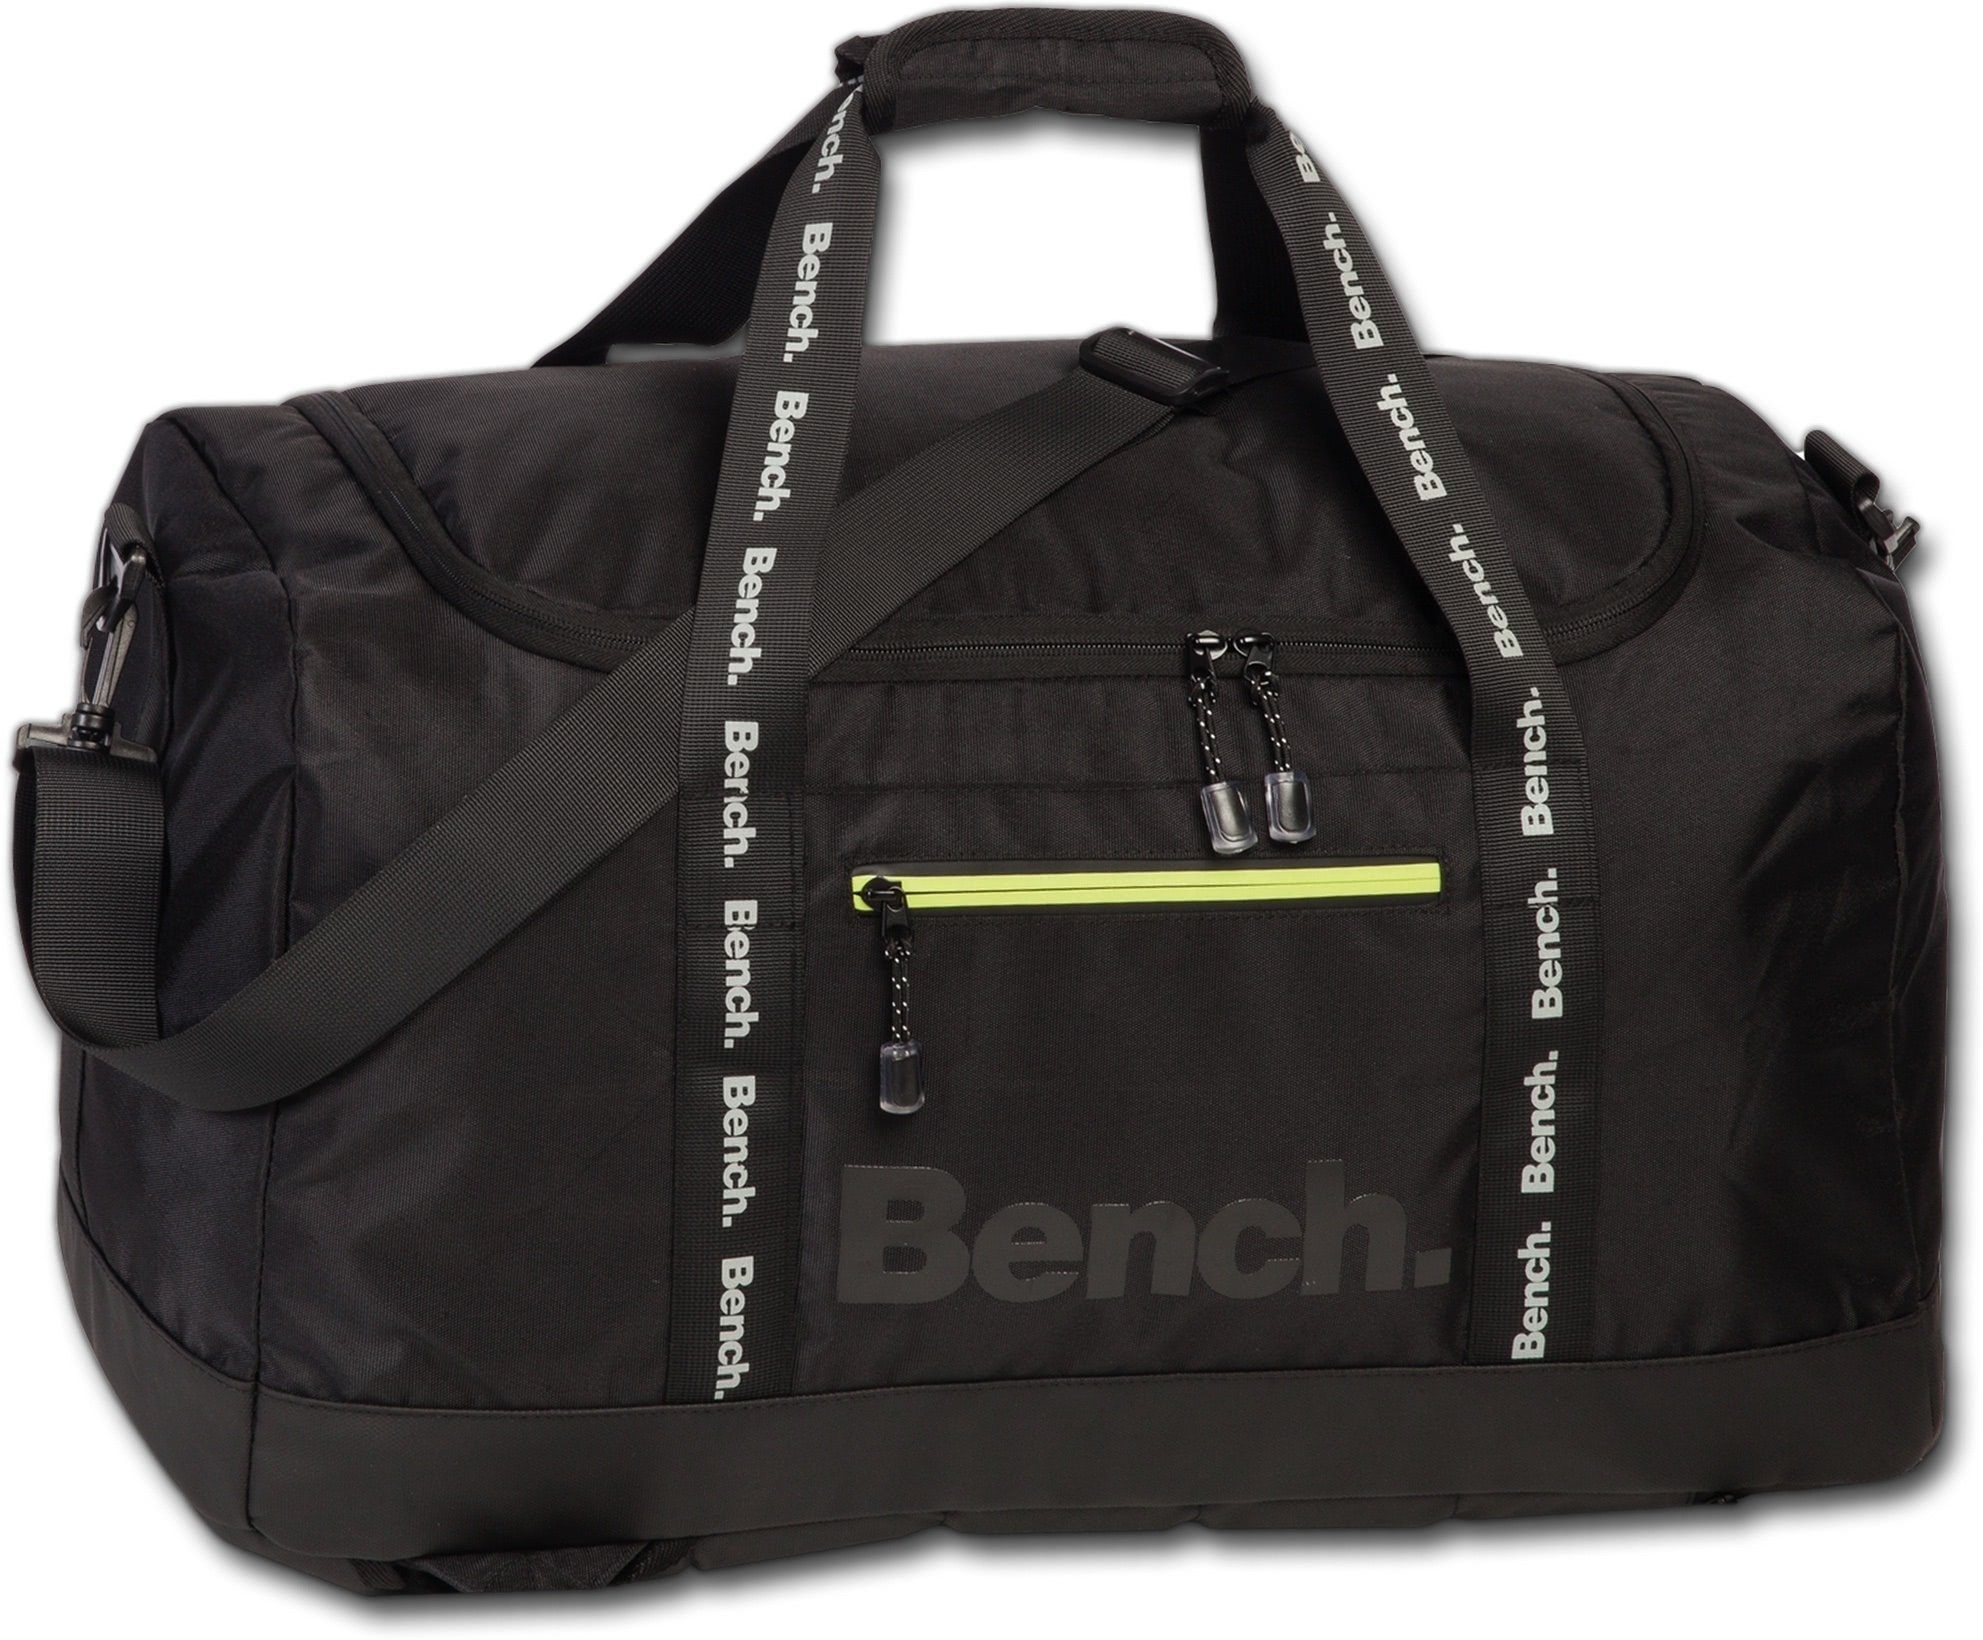 Bench. Sportrucksack Bench multifunktionale Reisetasche (Sportrucksack), Herren, Damen Tasche, Rucksack strapazierfähiges Textilnylon schwarz